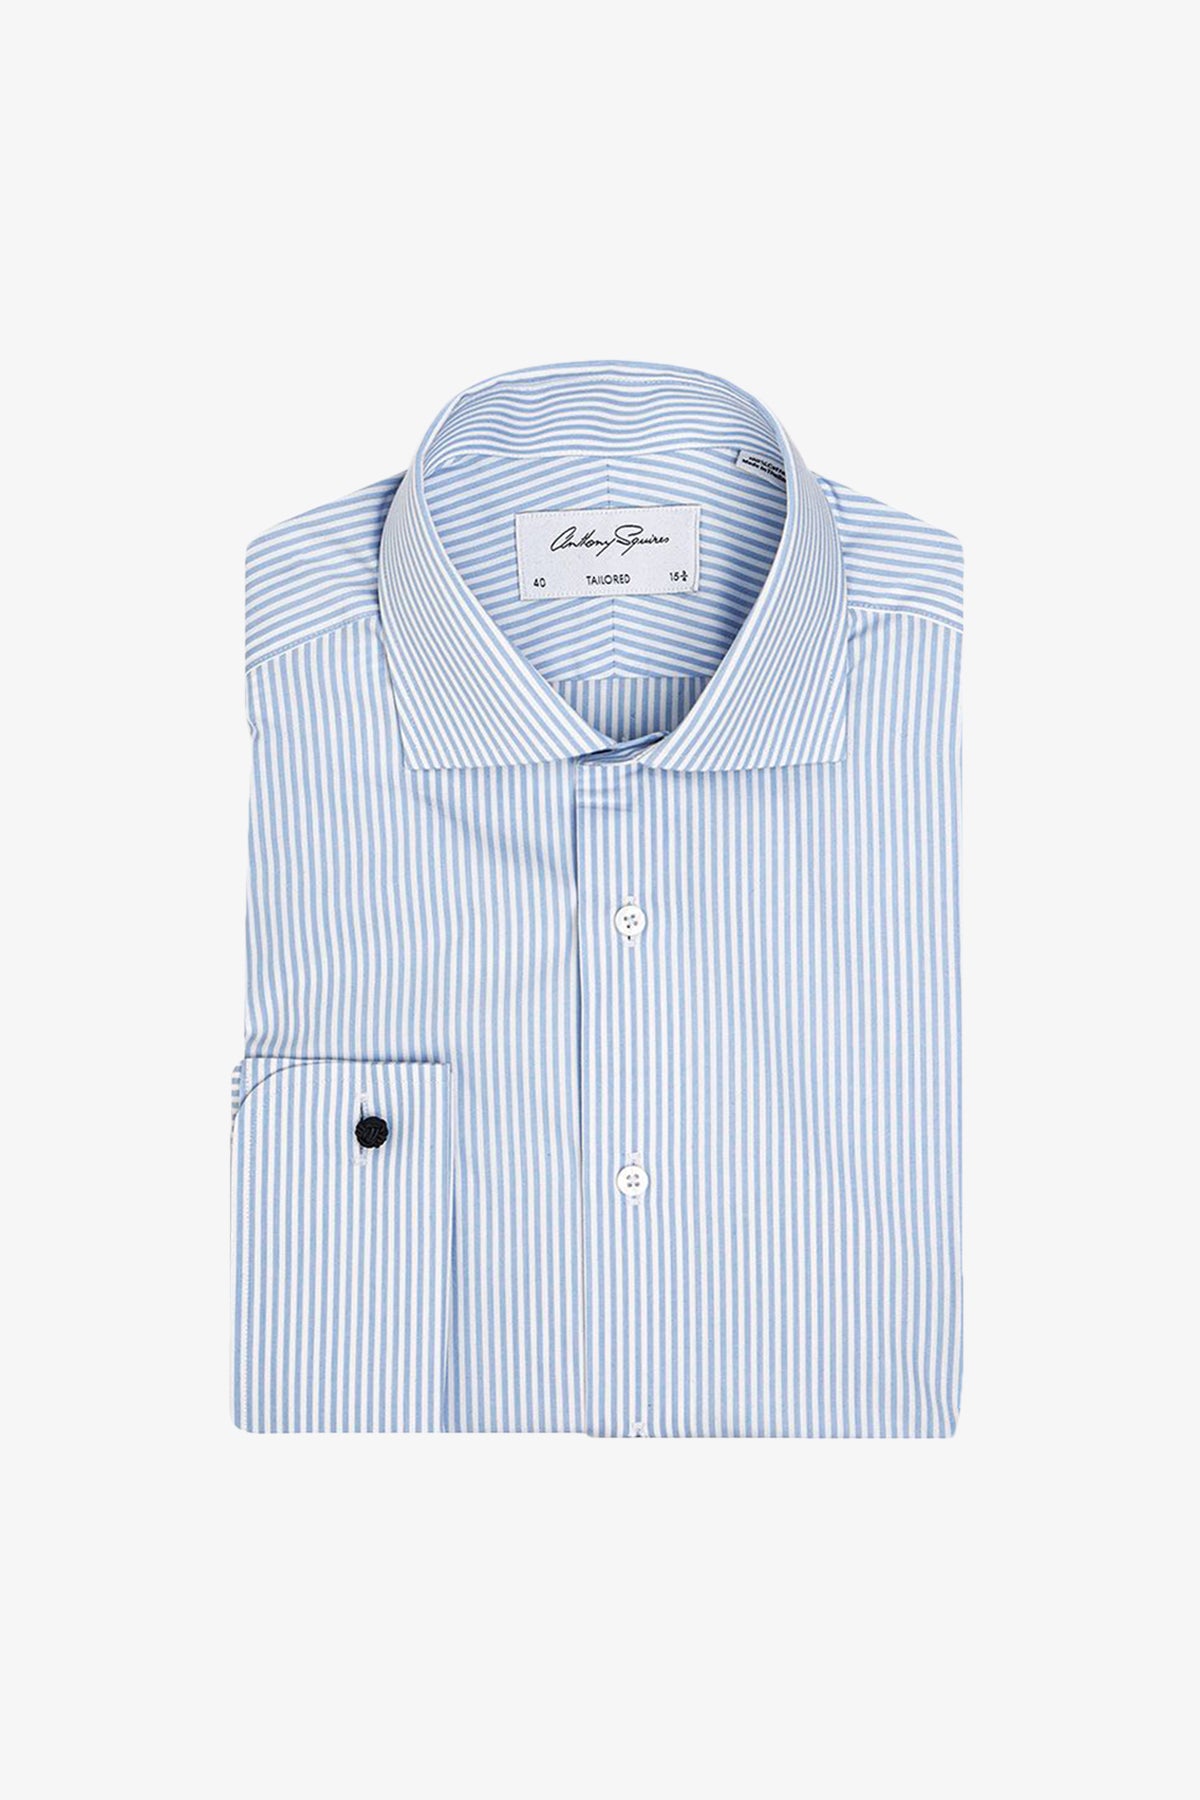 Garret - Light Blue Business shirt